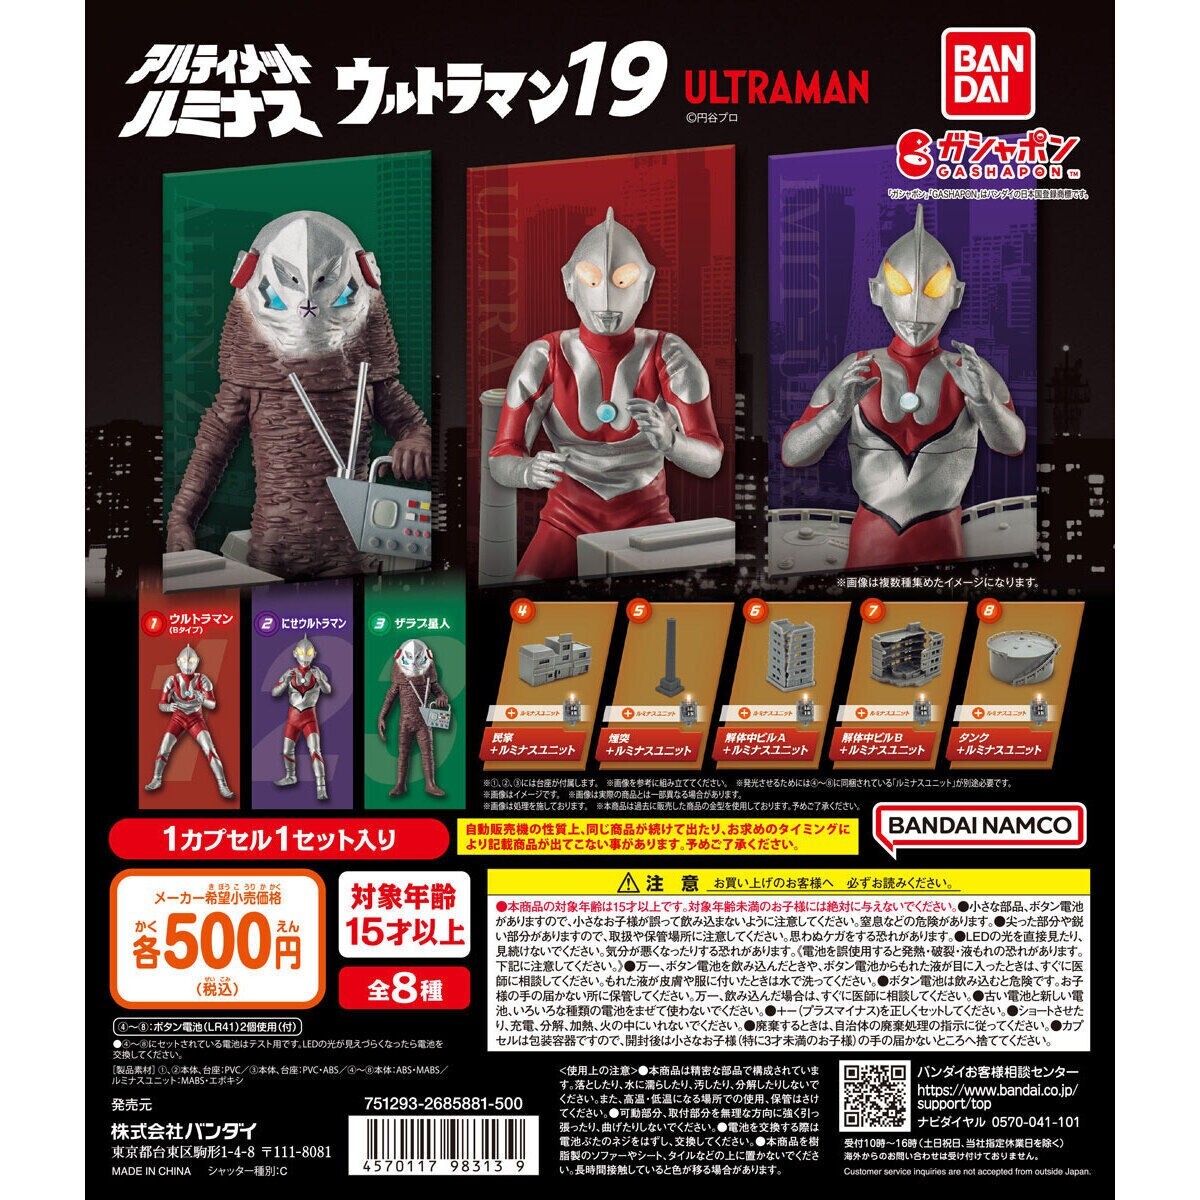  Bandai Ultimate ruminas Ultraman 19 все 8 вид Capsule брать .. пакет нераспечатанный *24 час получение сообщение сделка строгое соблюдение *